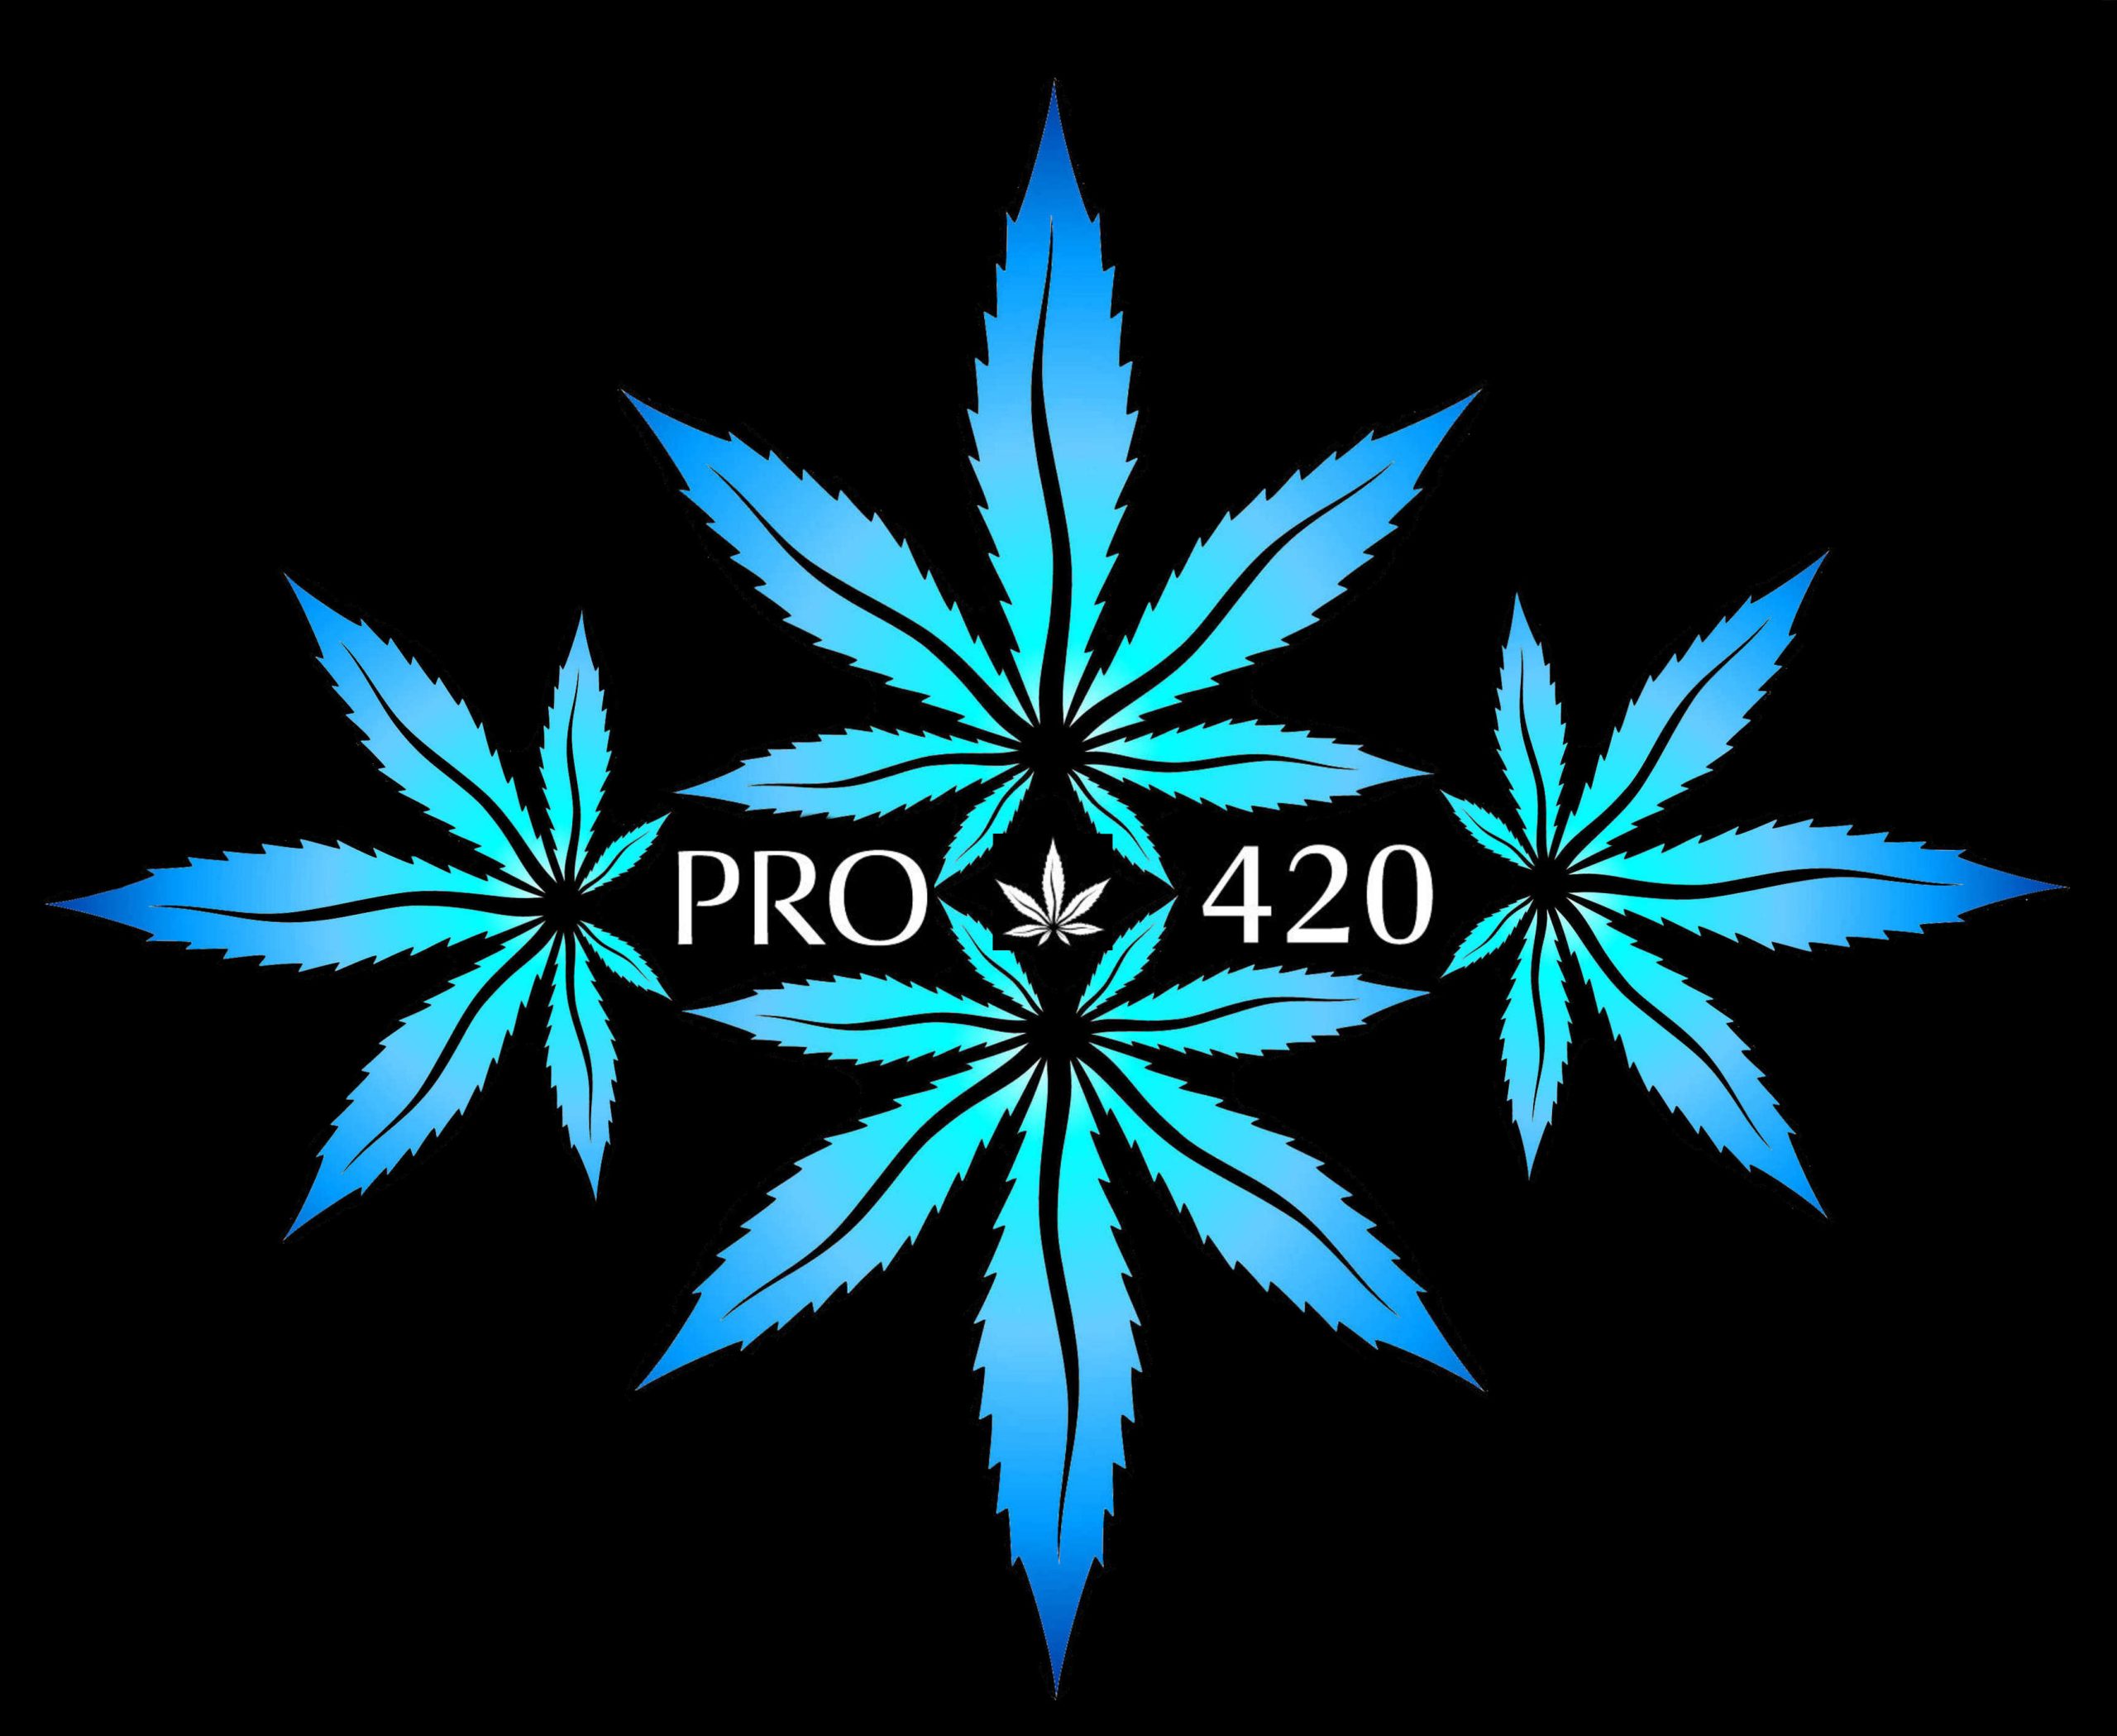 PRO 420 America's Favorite Smoke Shop